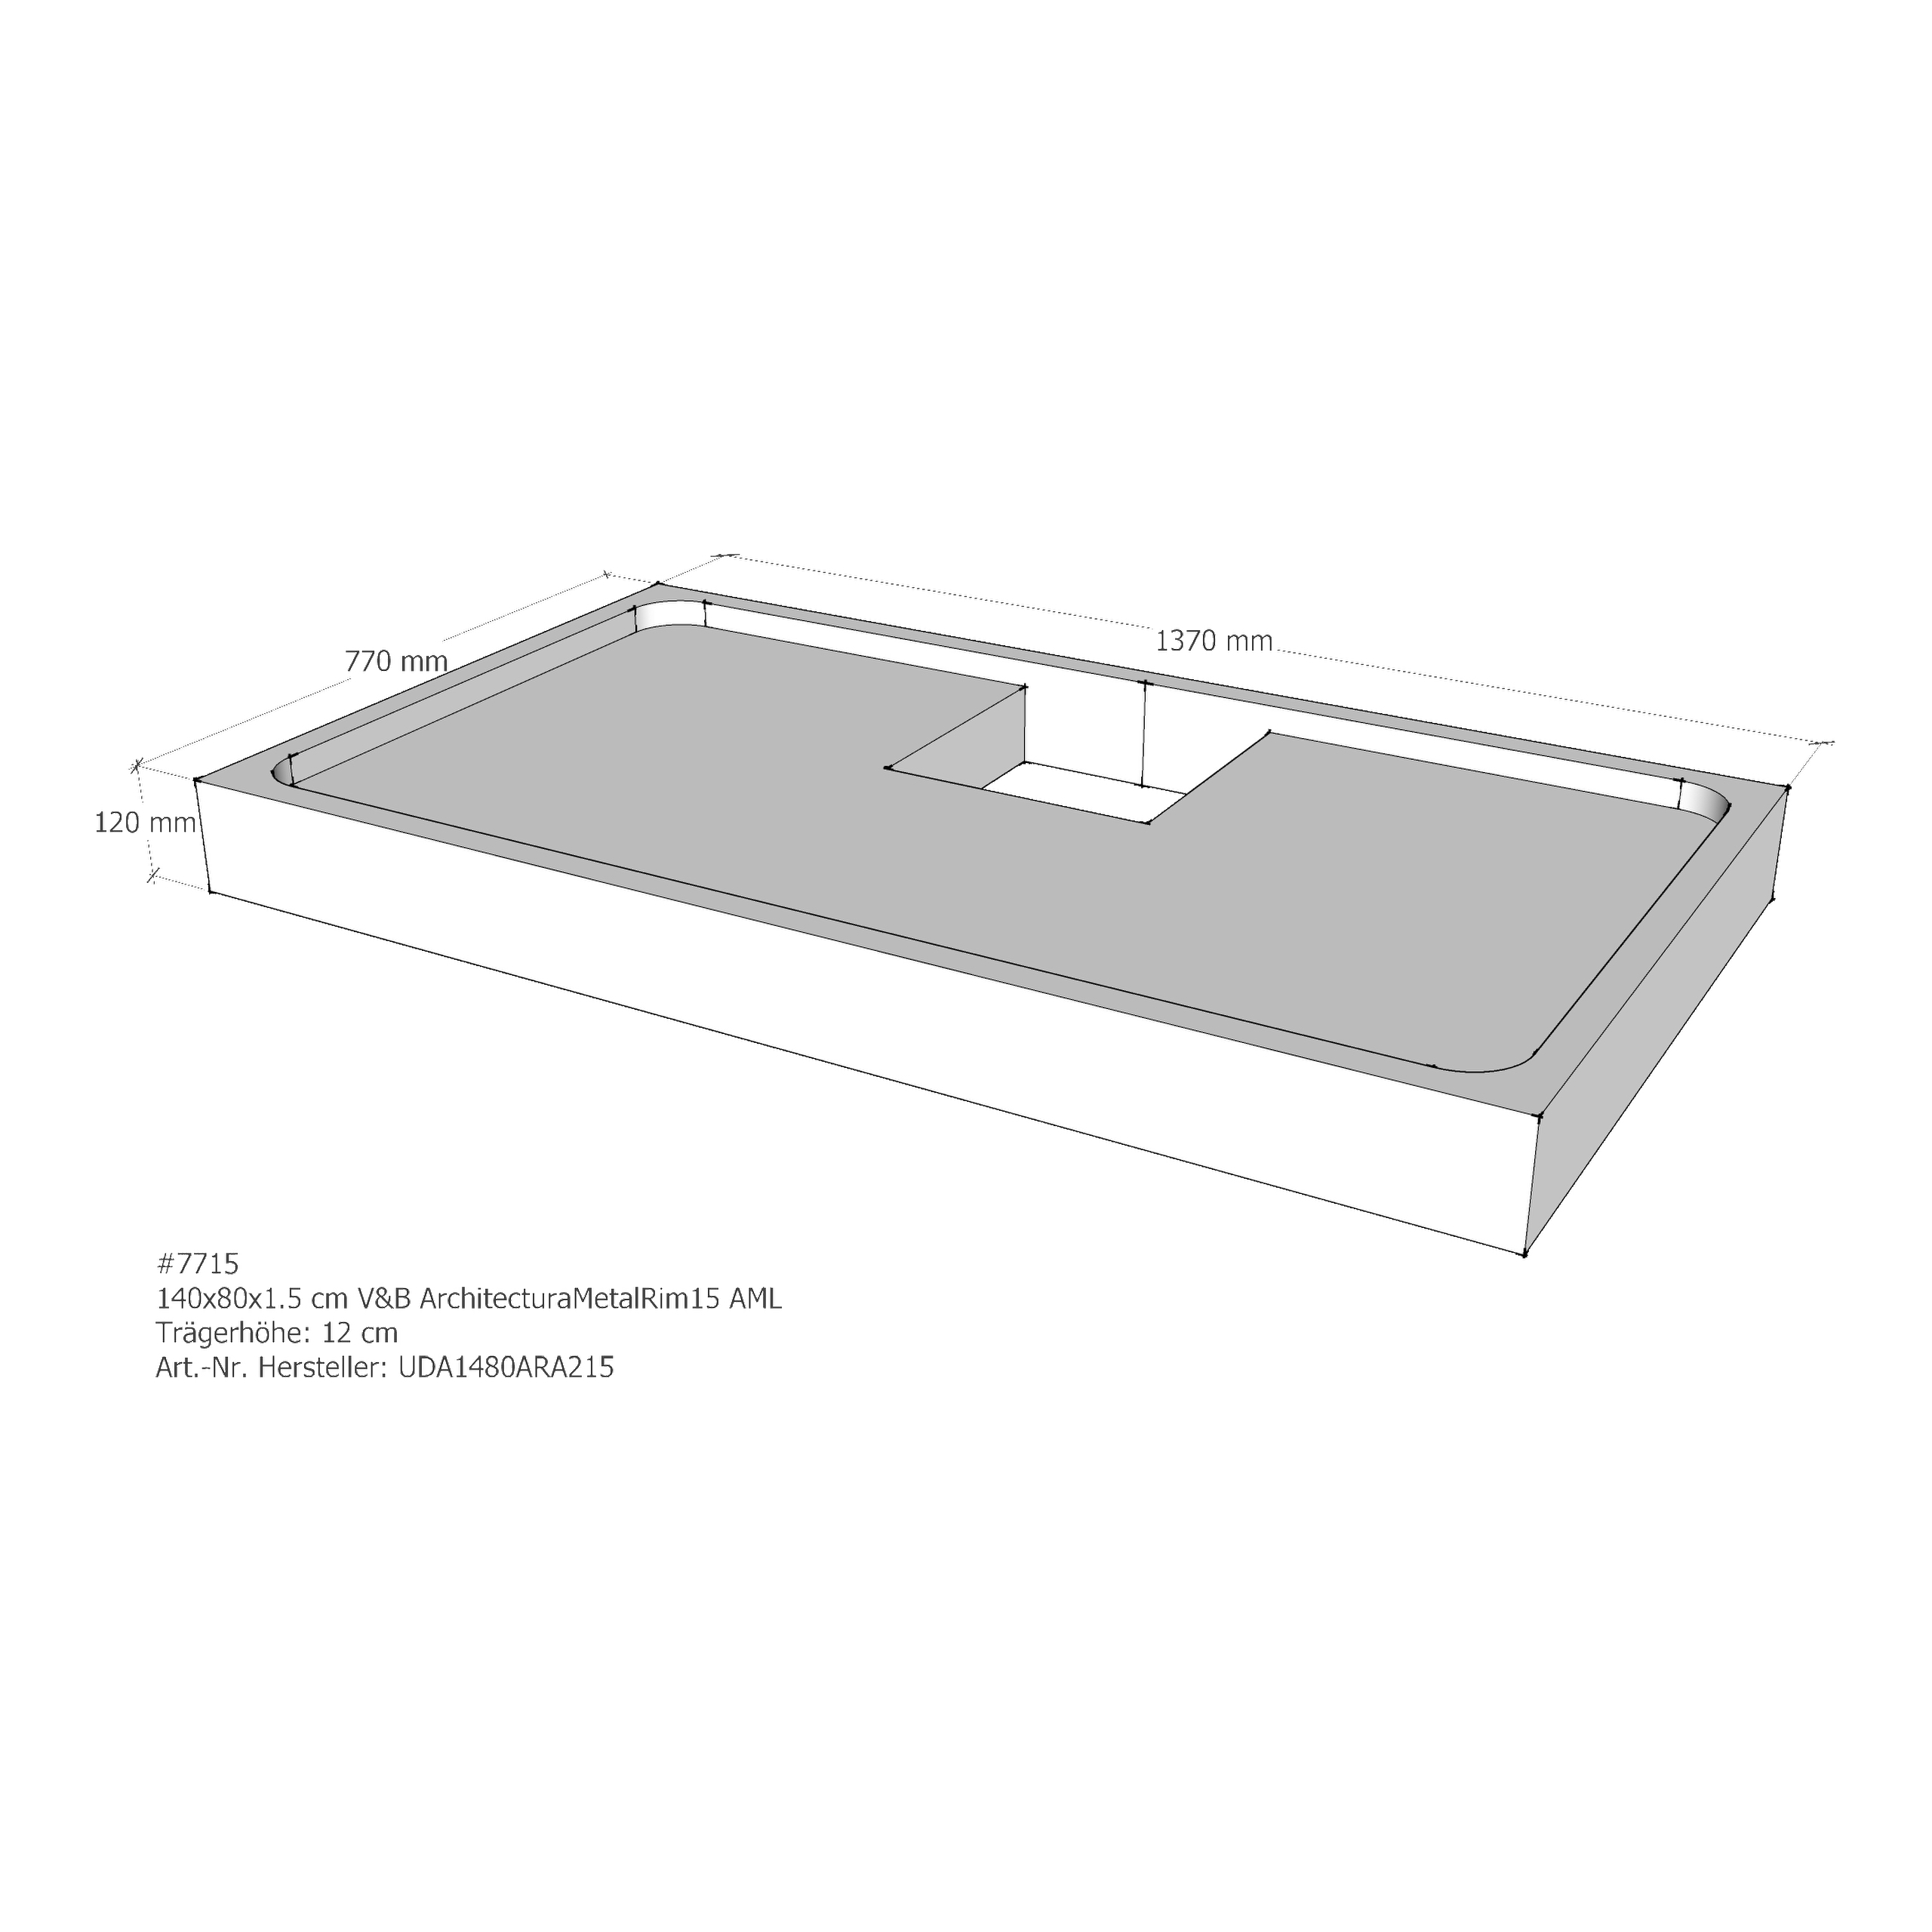 Duschwannenträger für Villeroy & Boch Architectura MetalRim 140 × 80 × 1,5 cm